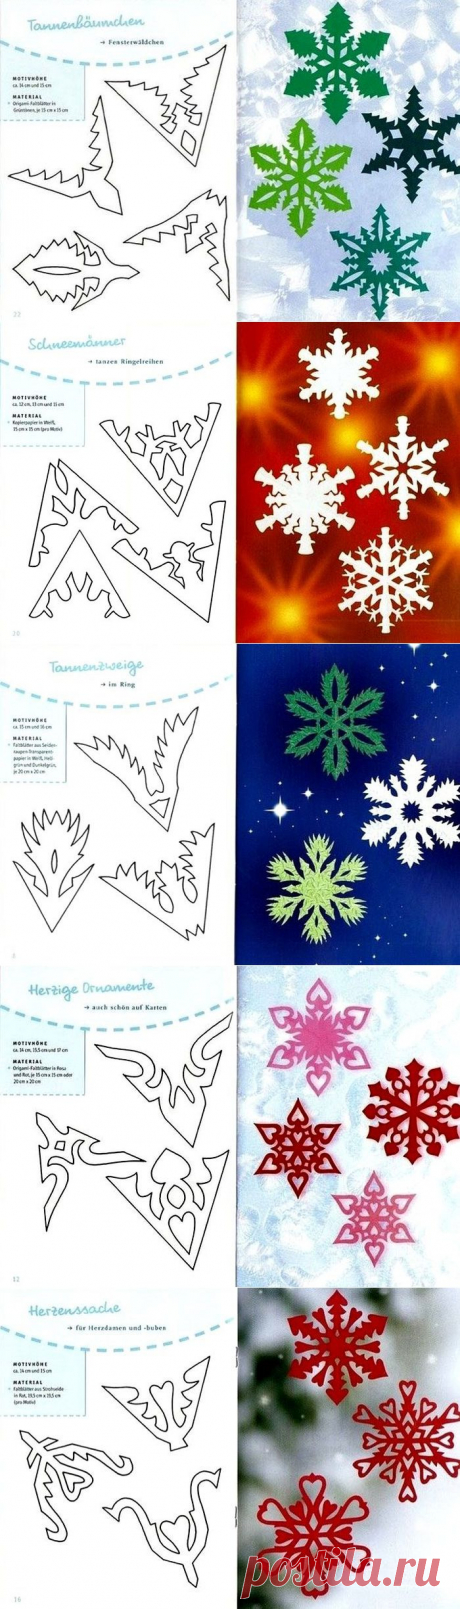 Как сделать снежинку из бумаги своими руками - схемы, фото, видео. Как вырезать снежинки из бумаги - объемную и красивую